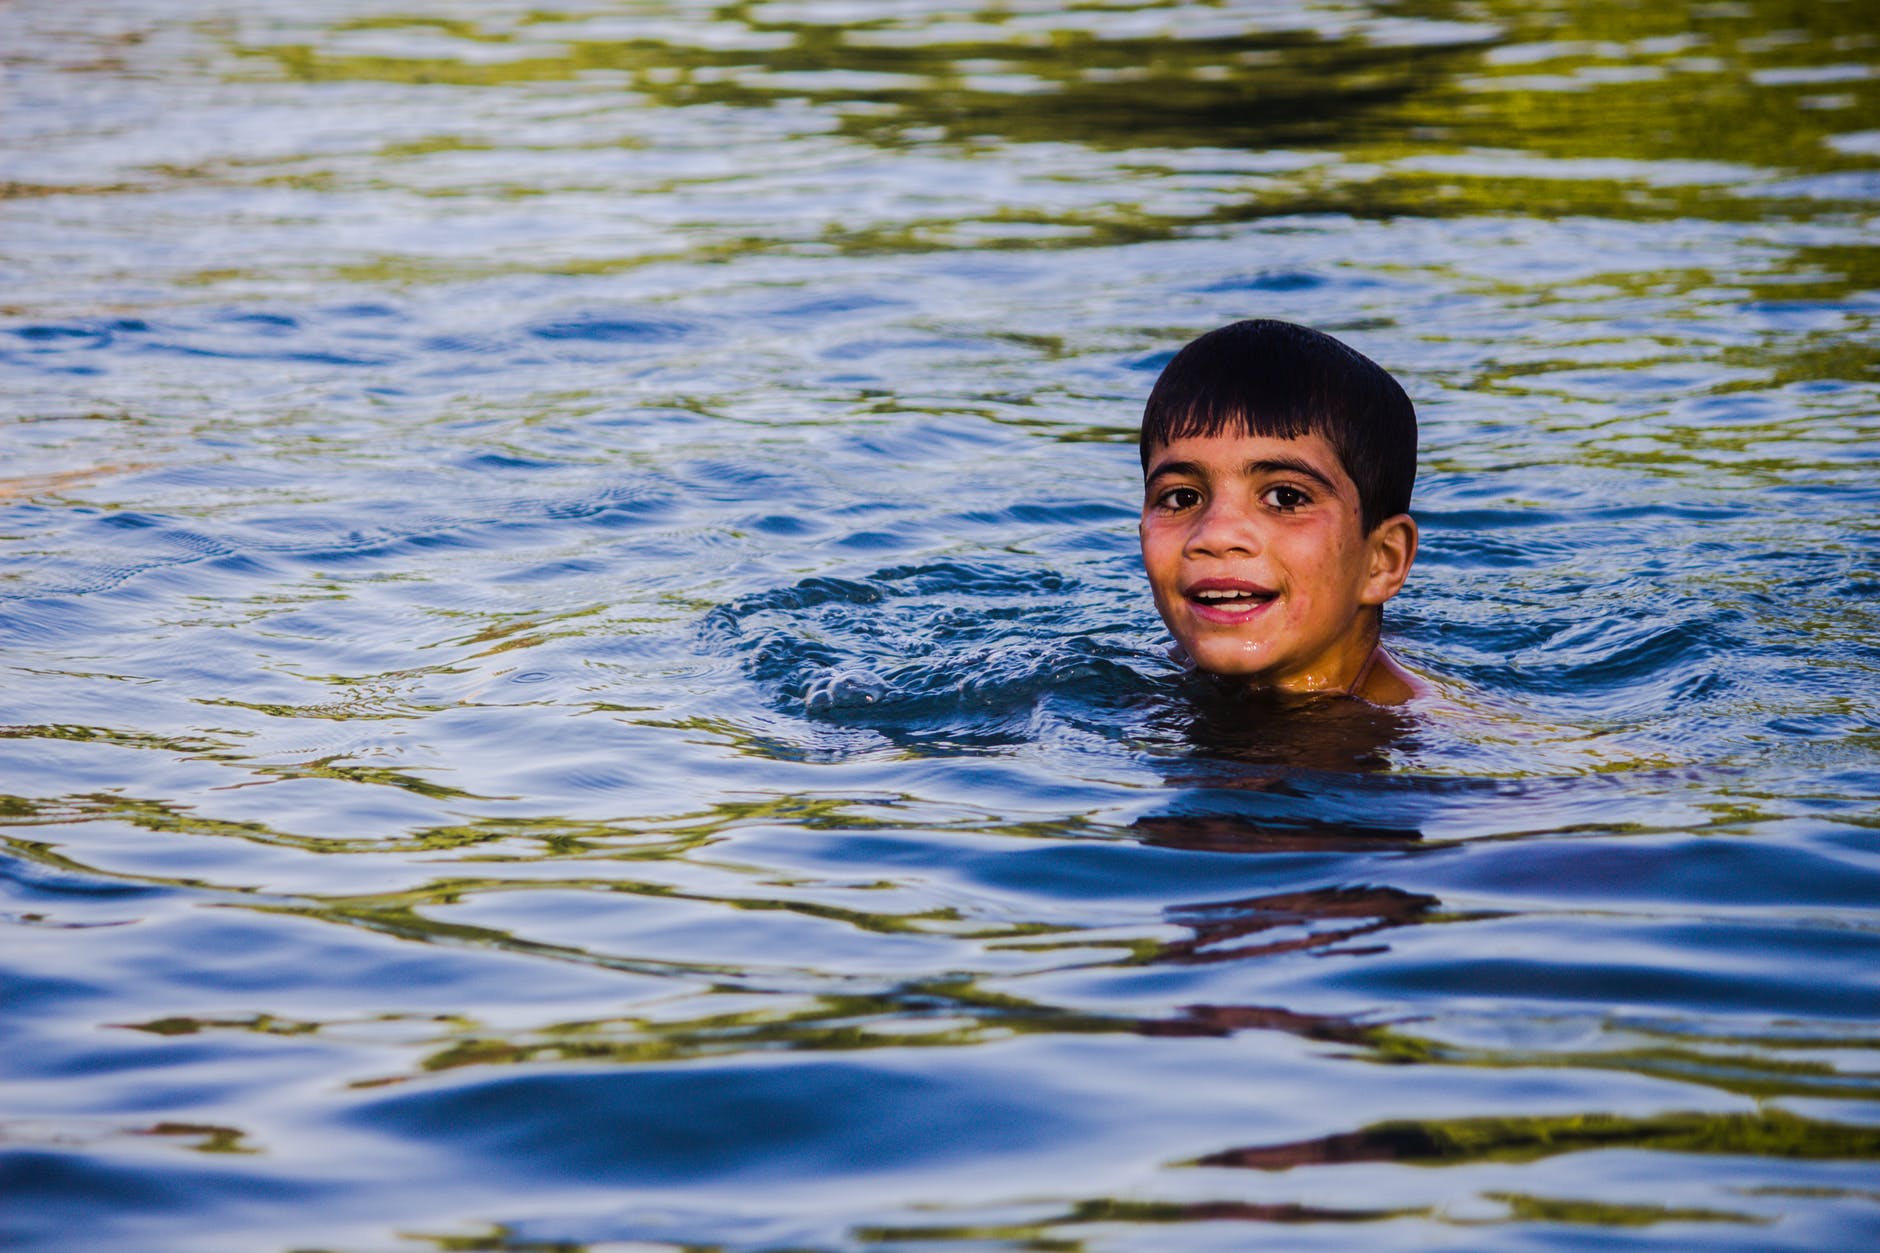 Jack versicherte ihm, dass er schwimmen und Hilfe holen könne. | Quelle: Pexels